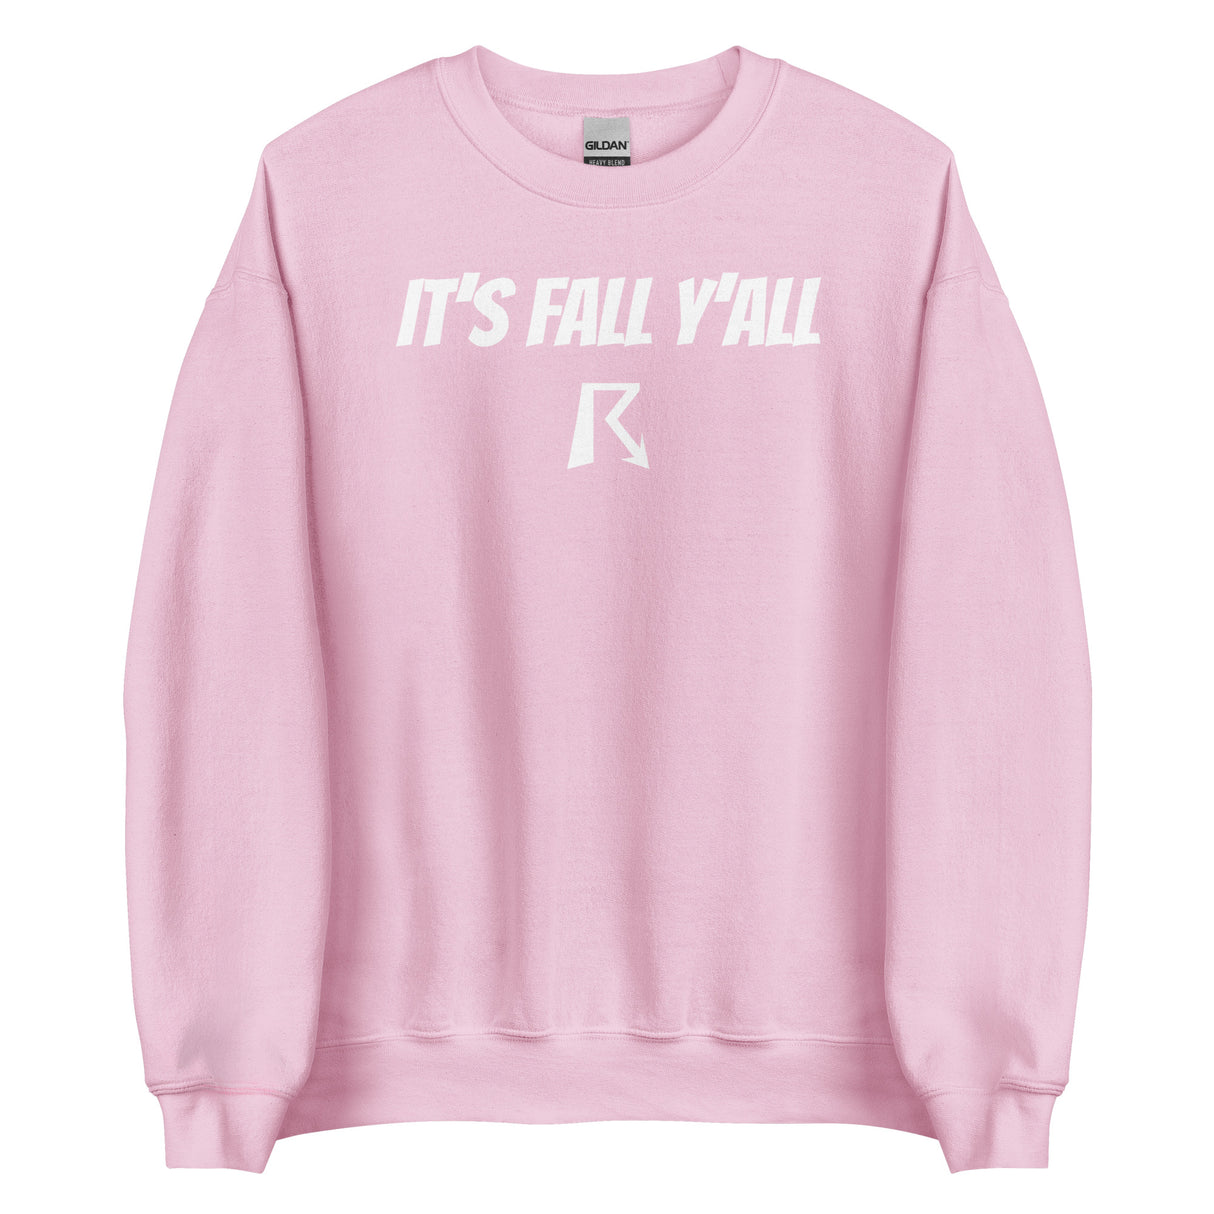 It's Fall Y'all Crewneck Sweatshirt